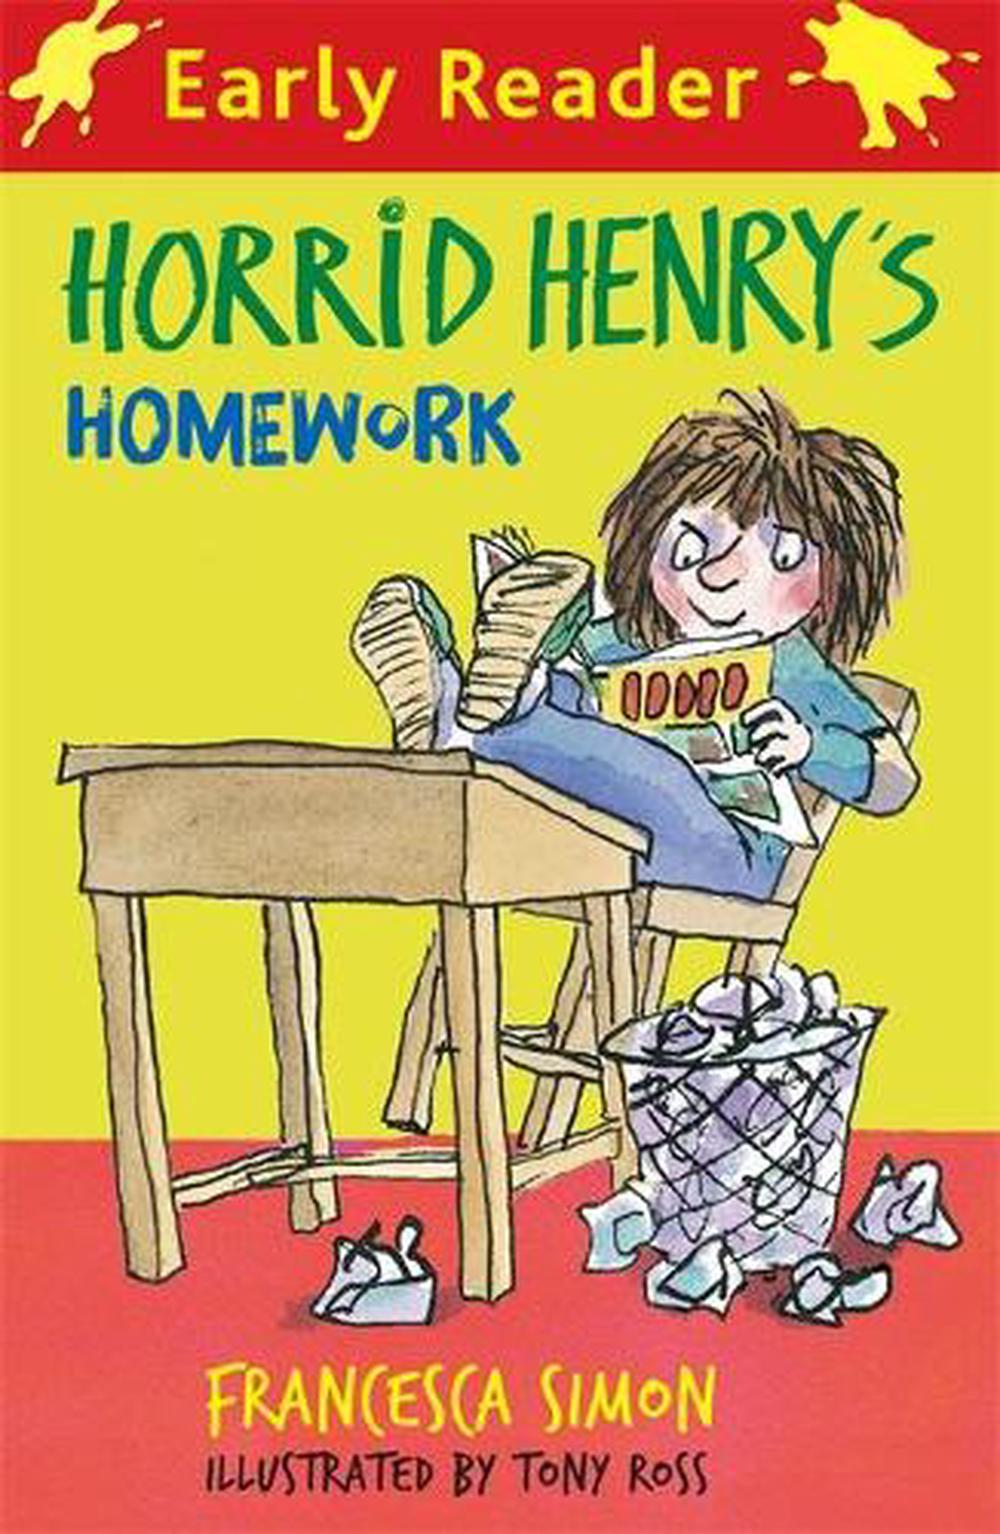 Early reading. Simon Francesca "Horrid Henry". Horrid Henry early Reader. Horrid Henry reads a book. Early Reader books.